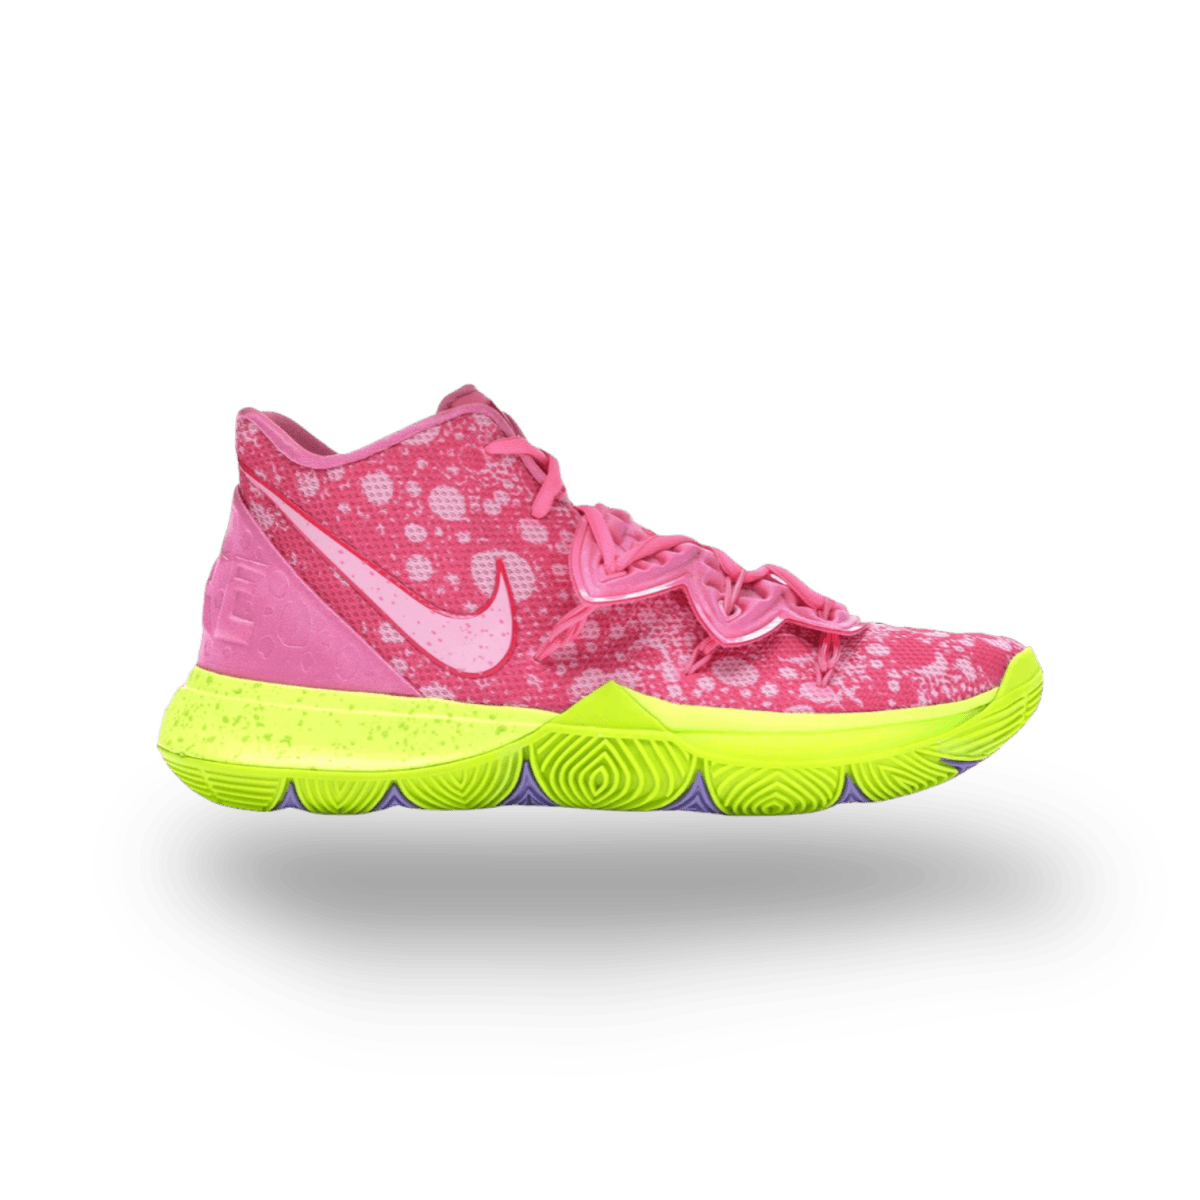 Kyrie 5 Spongebob Patrick - Mid Sneaker - Jawns on Fire Sneakers & Streetwear